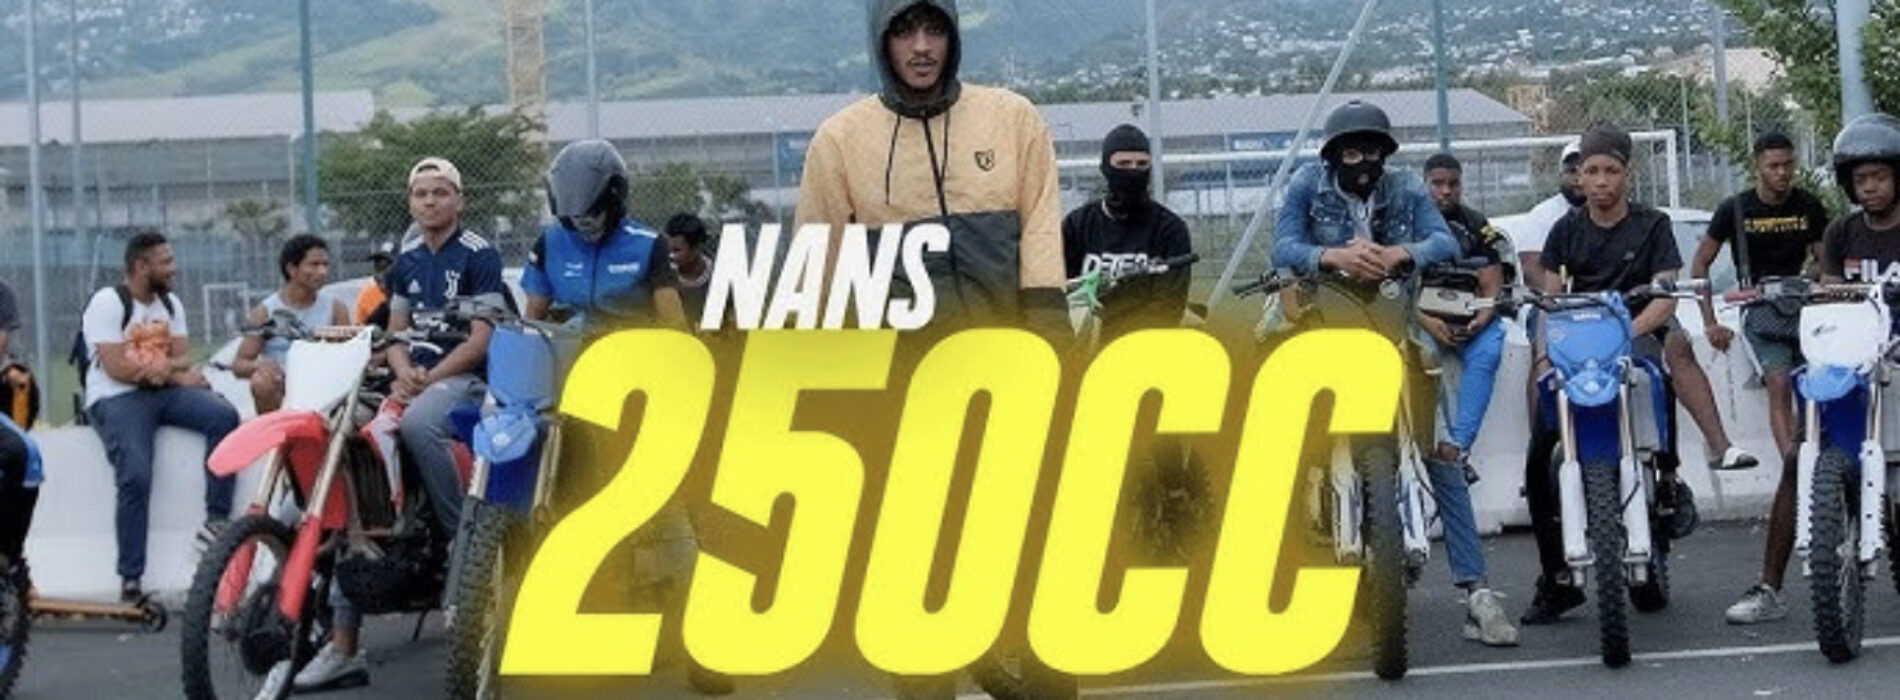 Nans – 250cc (Part.3) – Janvier 2023